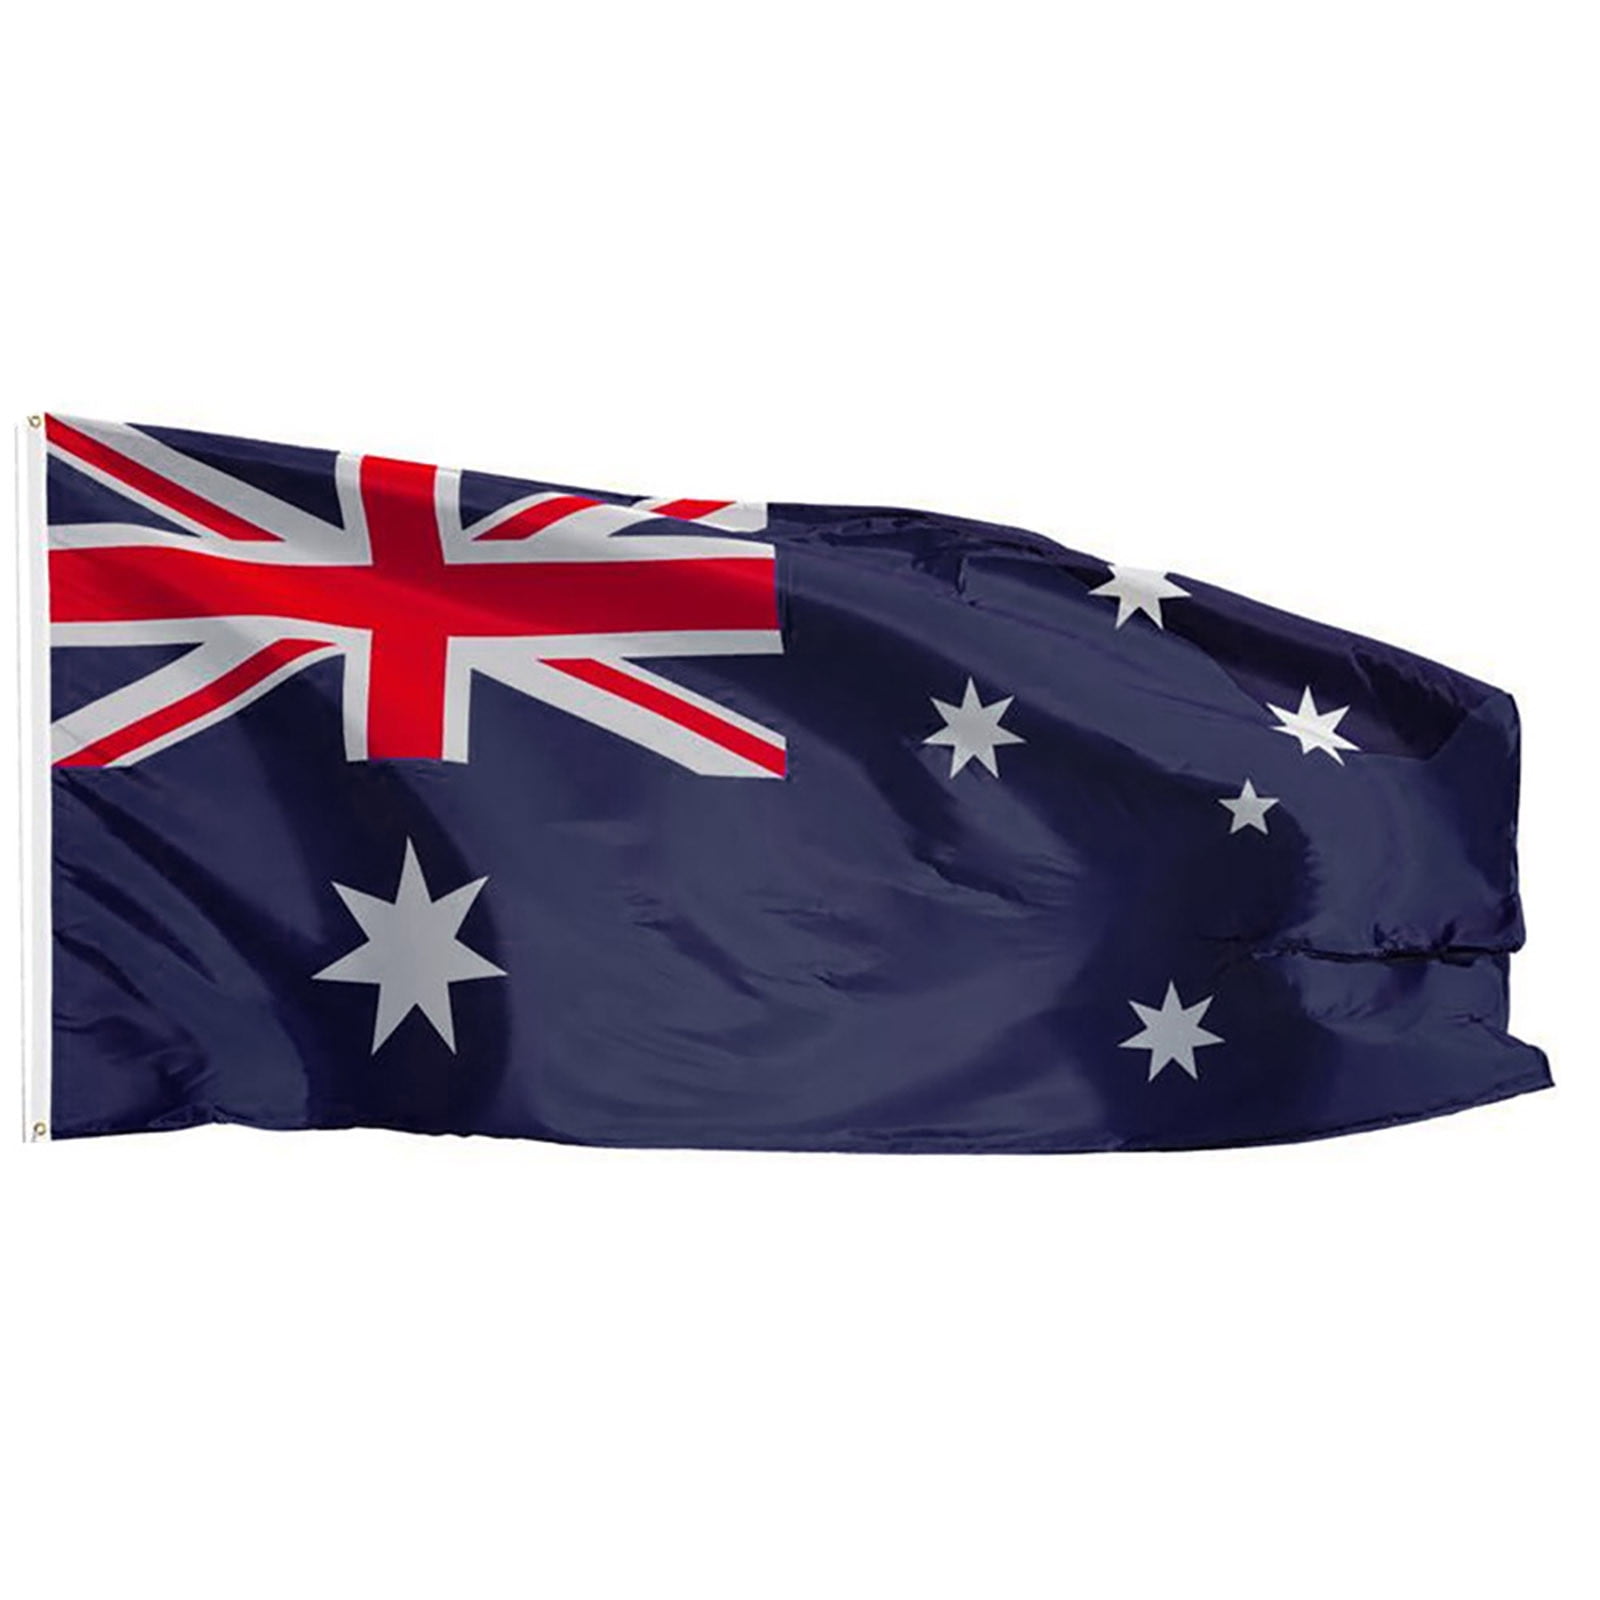 NEW 3X5ft AUSTRALIA FLAG AUSTRALIAN better quality usa seller 